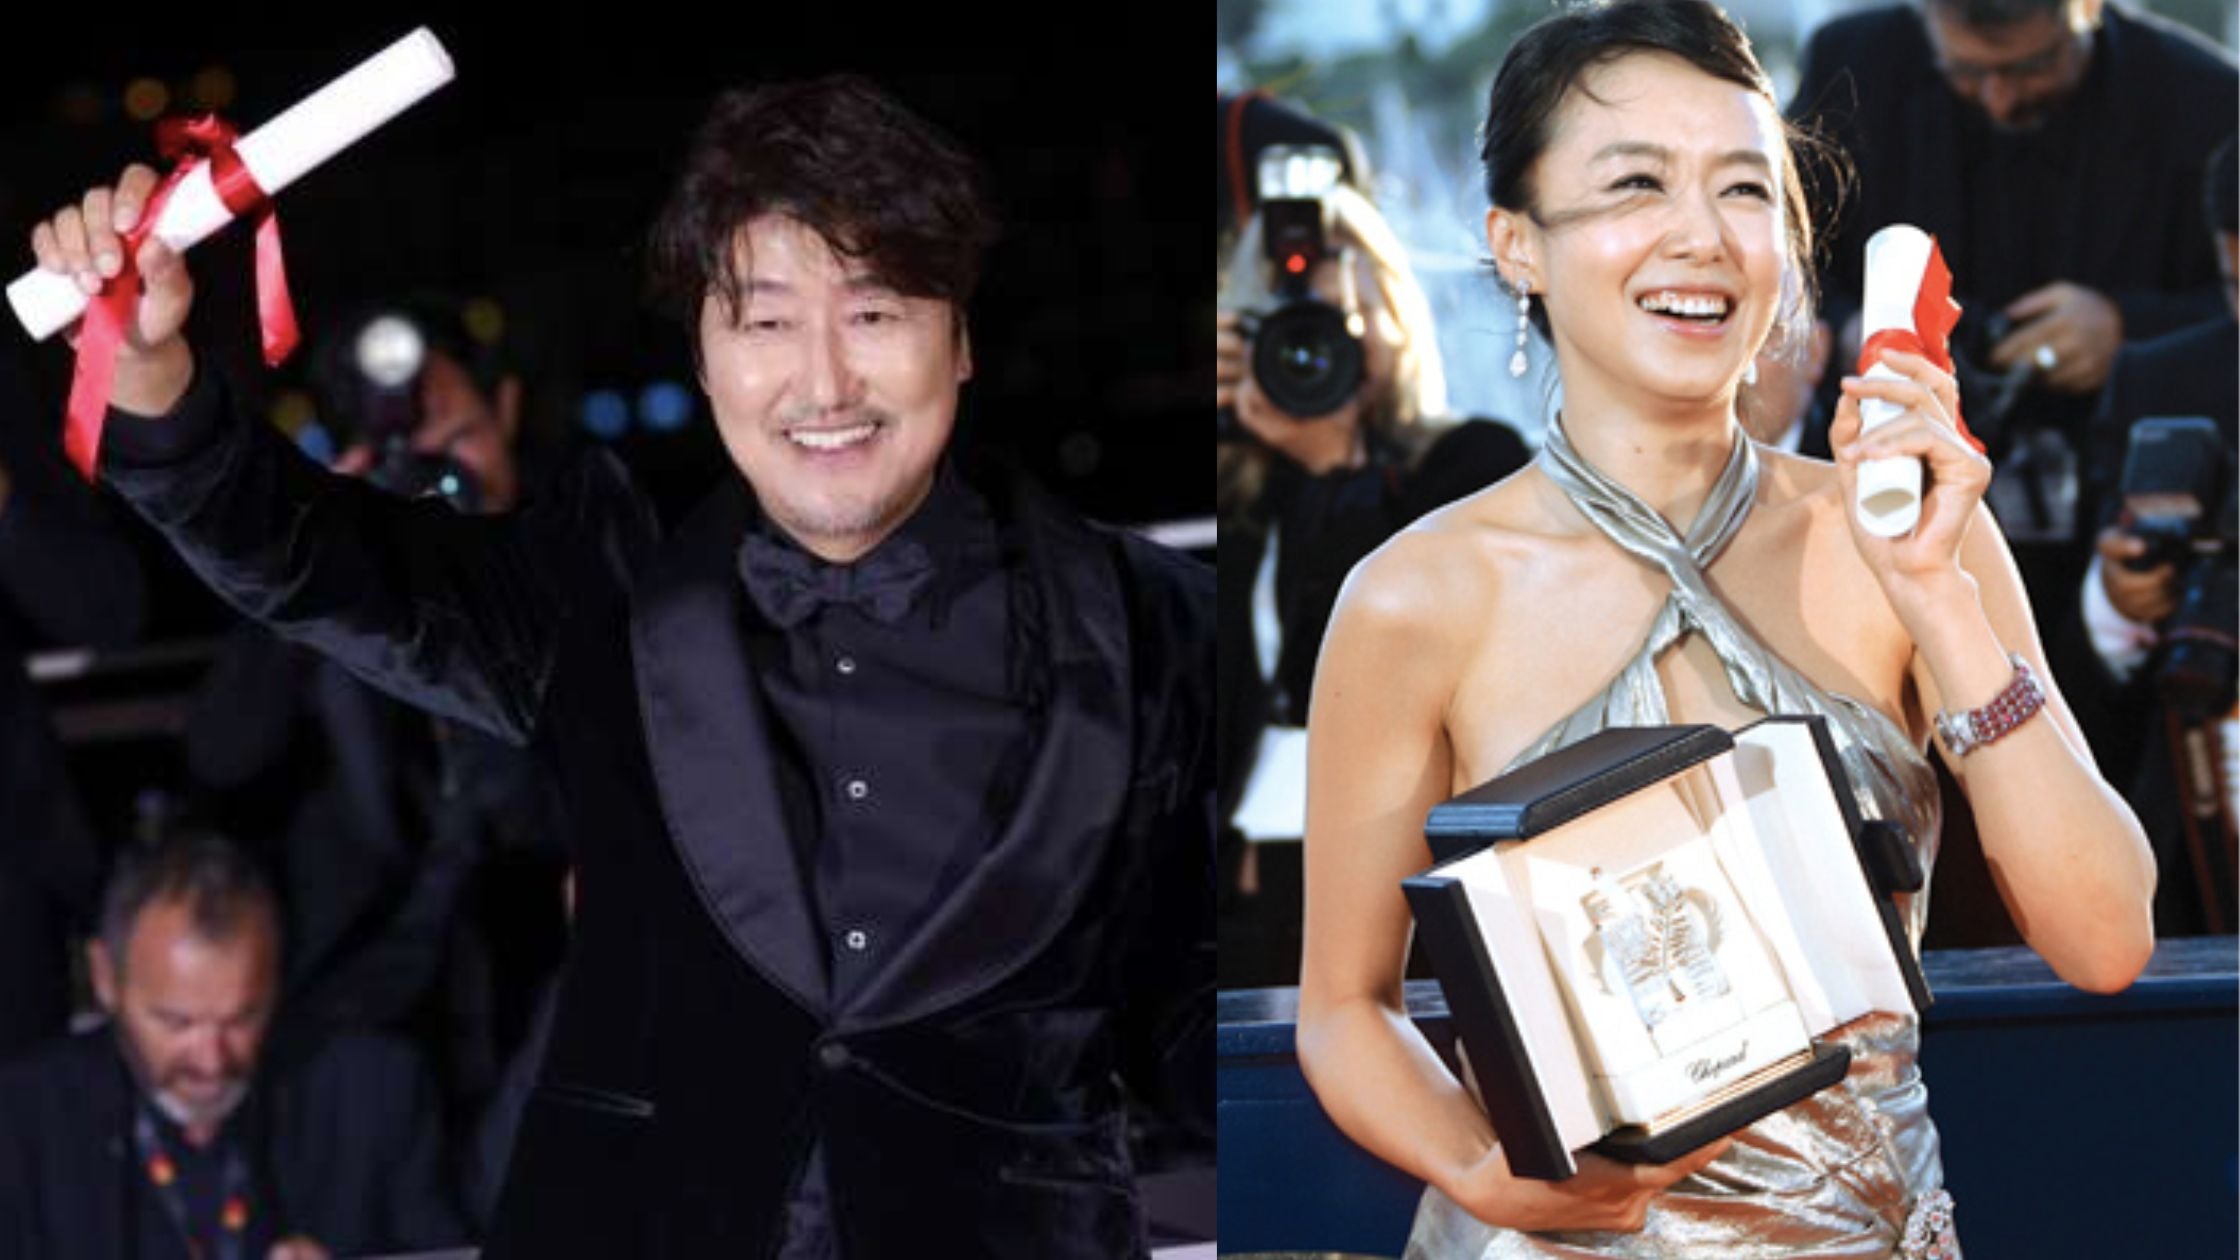 Song Kang-ho and Jeon Do-yeon winning awards